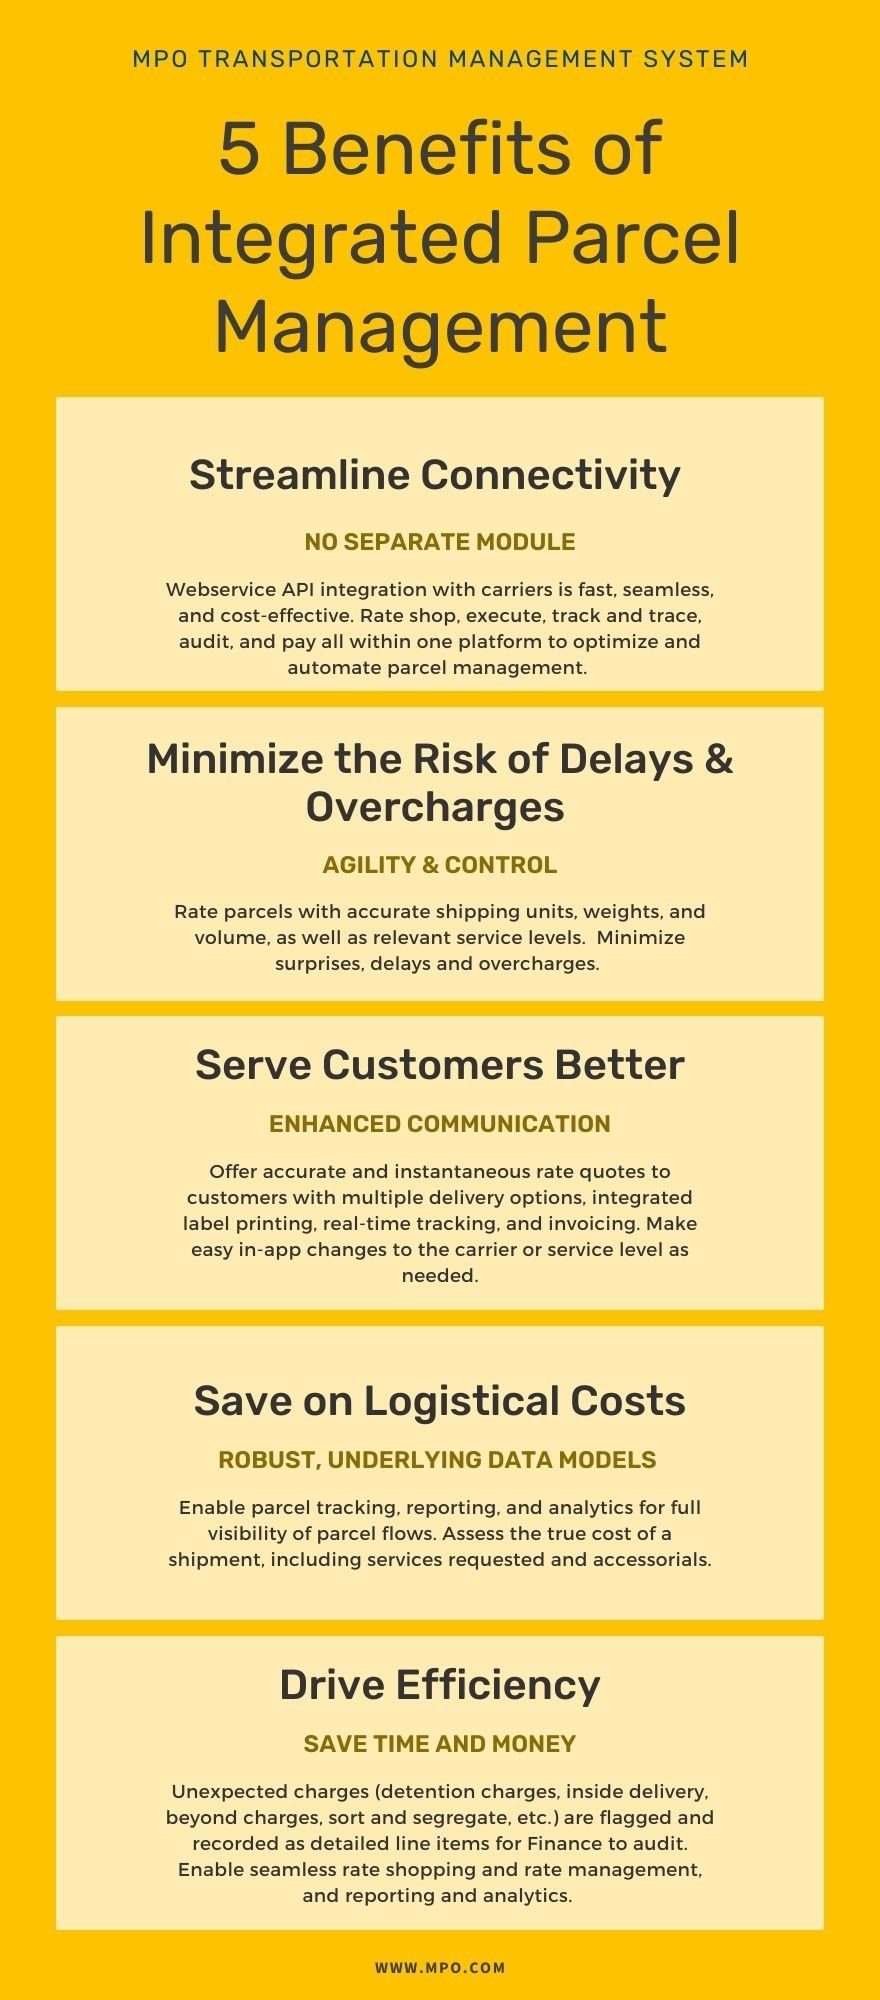 MPO Parcel Management Benefits Infographic